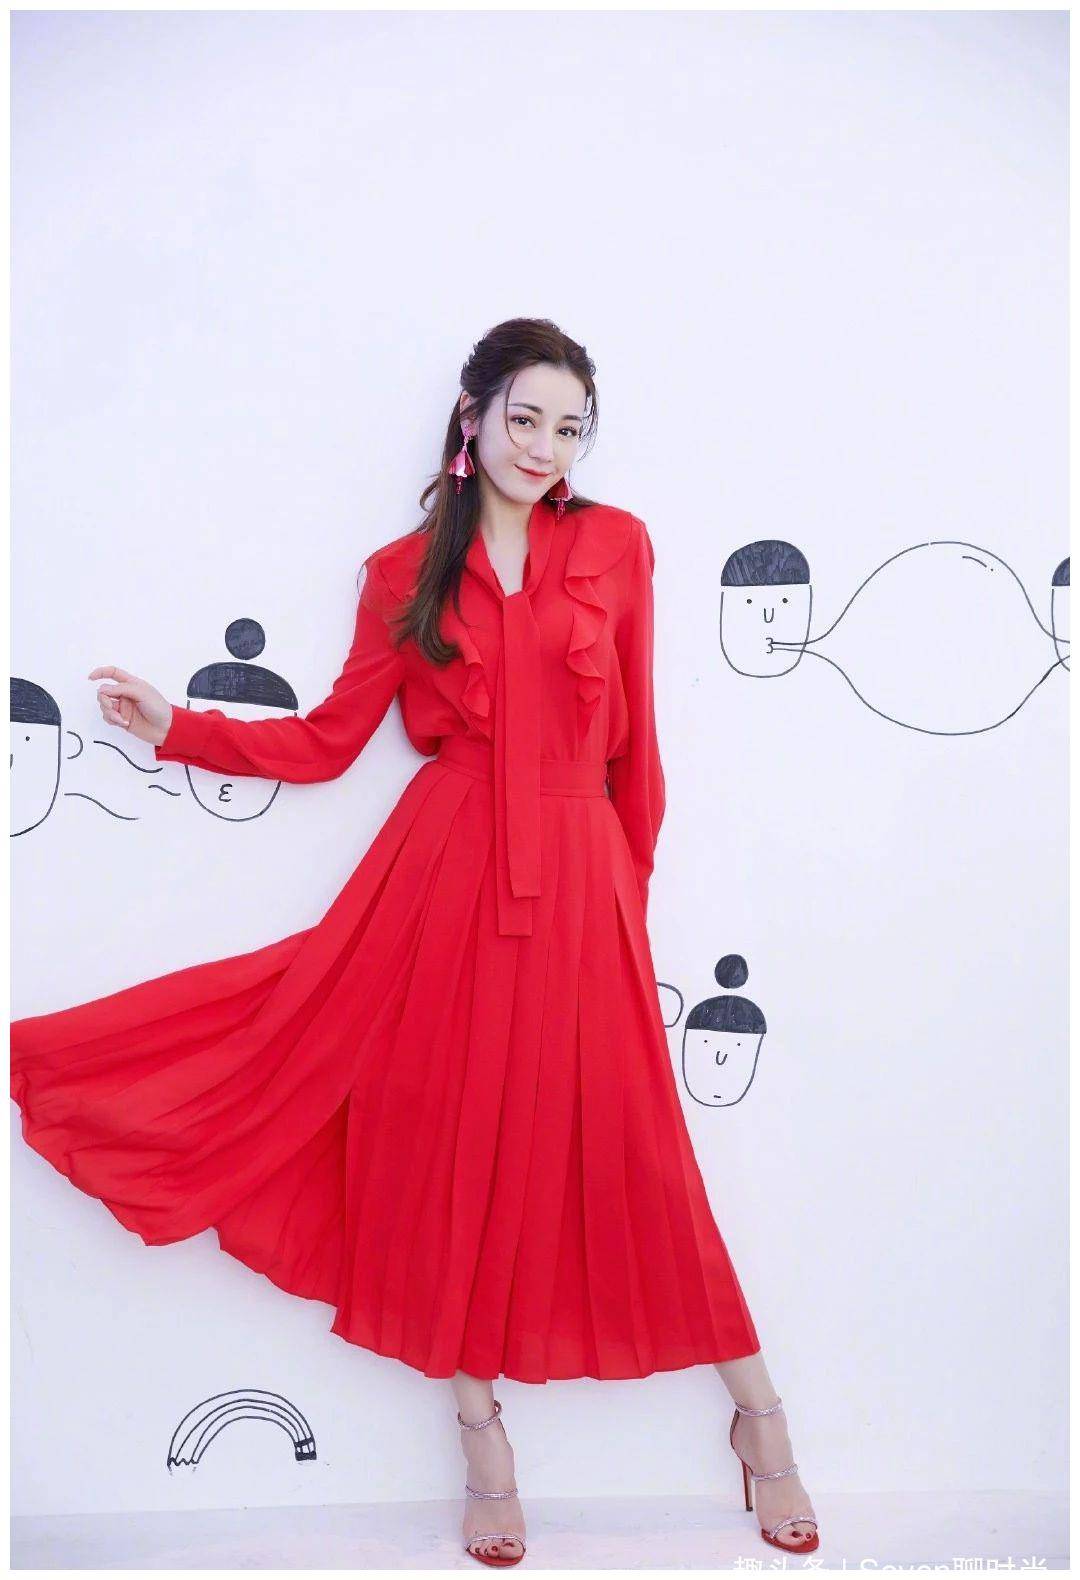 迪丽热巴今日上海活动造型，侧分波浪卷发配以酒红丝绒裙